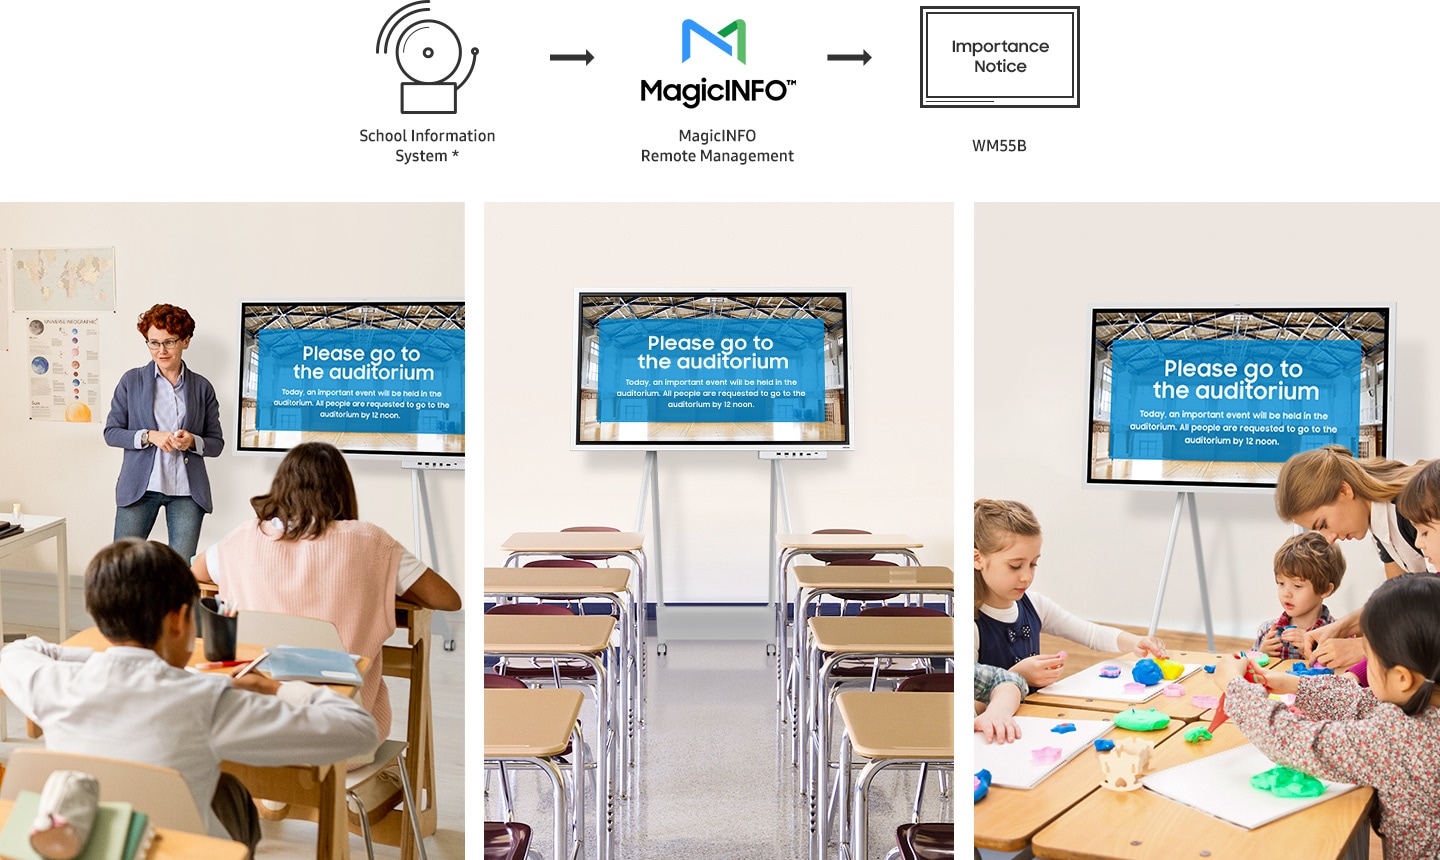 O sistema de informação escolar* está exibindo simultaneamente o aviso de Importância no Flip Pro instalado em diferentes salas de aula através do gerenciamento remoto Magicinfo.